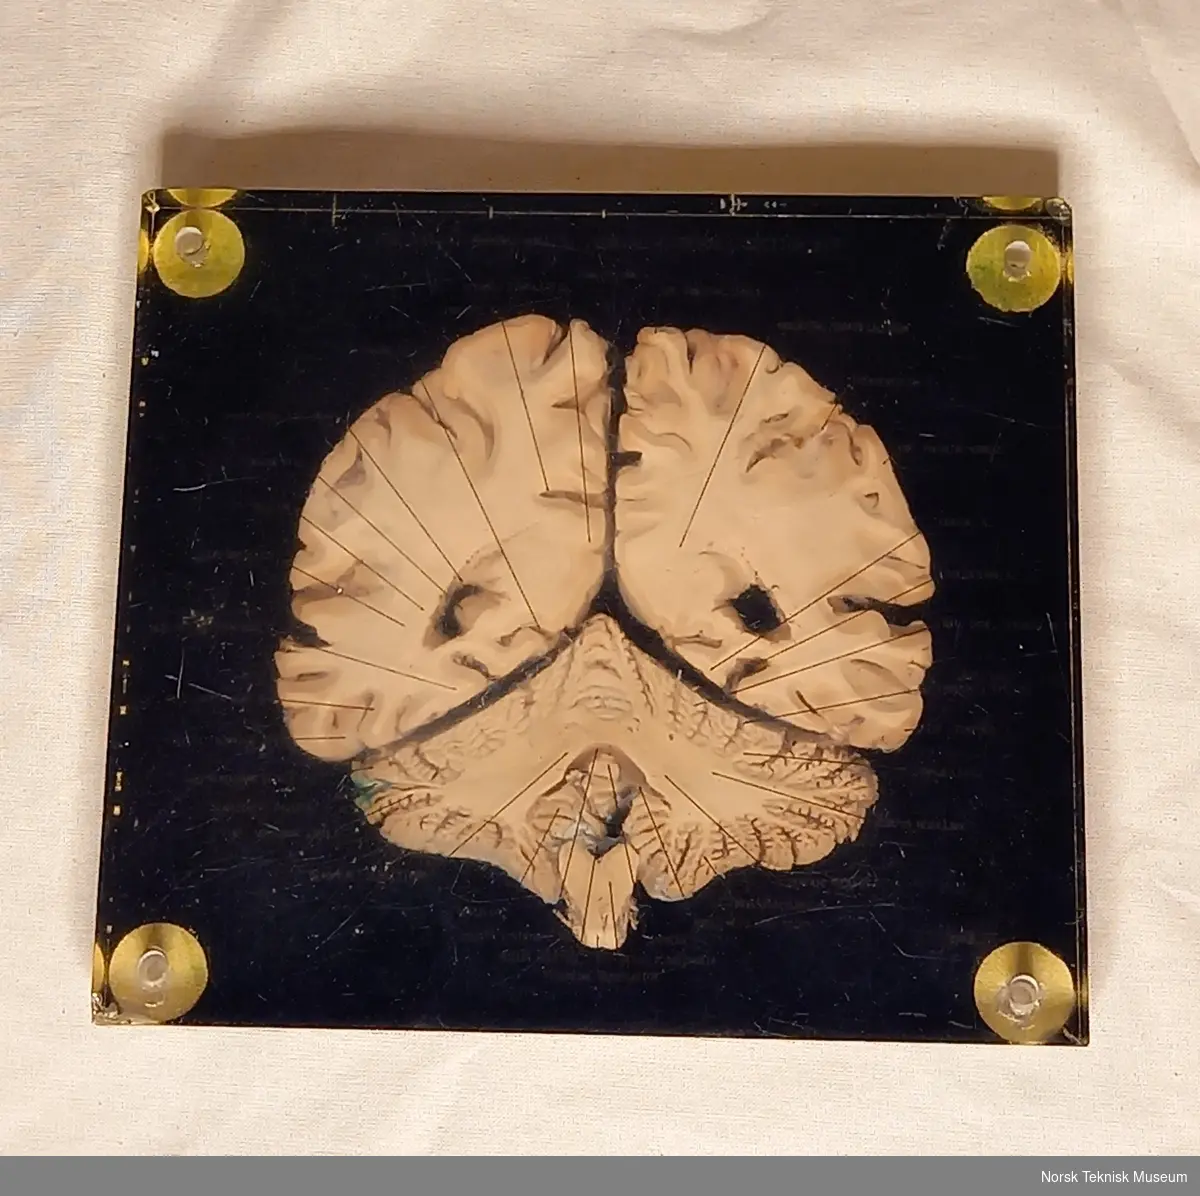 Tverrsnitt av hjerne i glasslignende materiale med påført tekst som viser til forskjellige hjernedelene med svart bakgrunn.